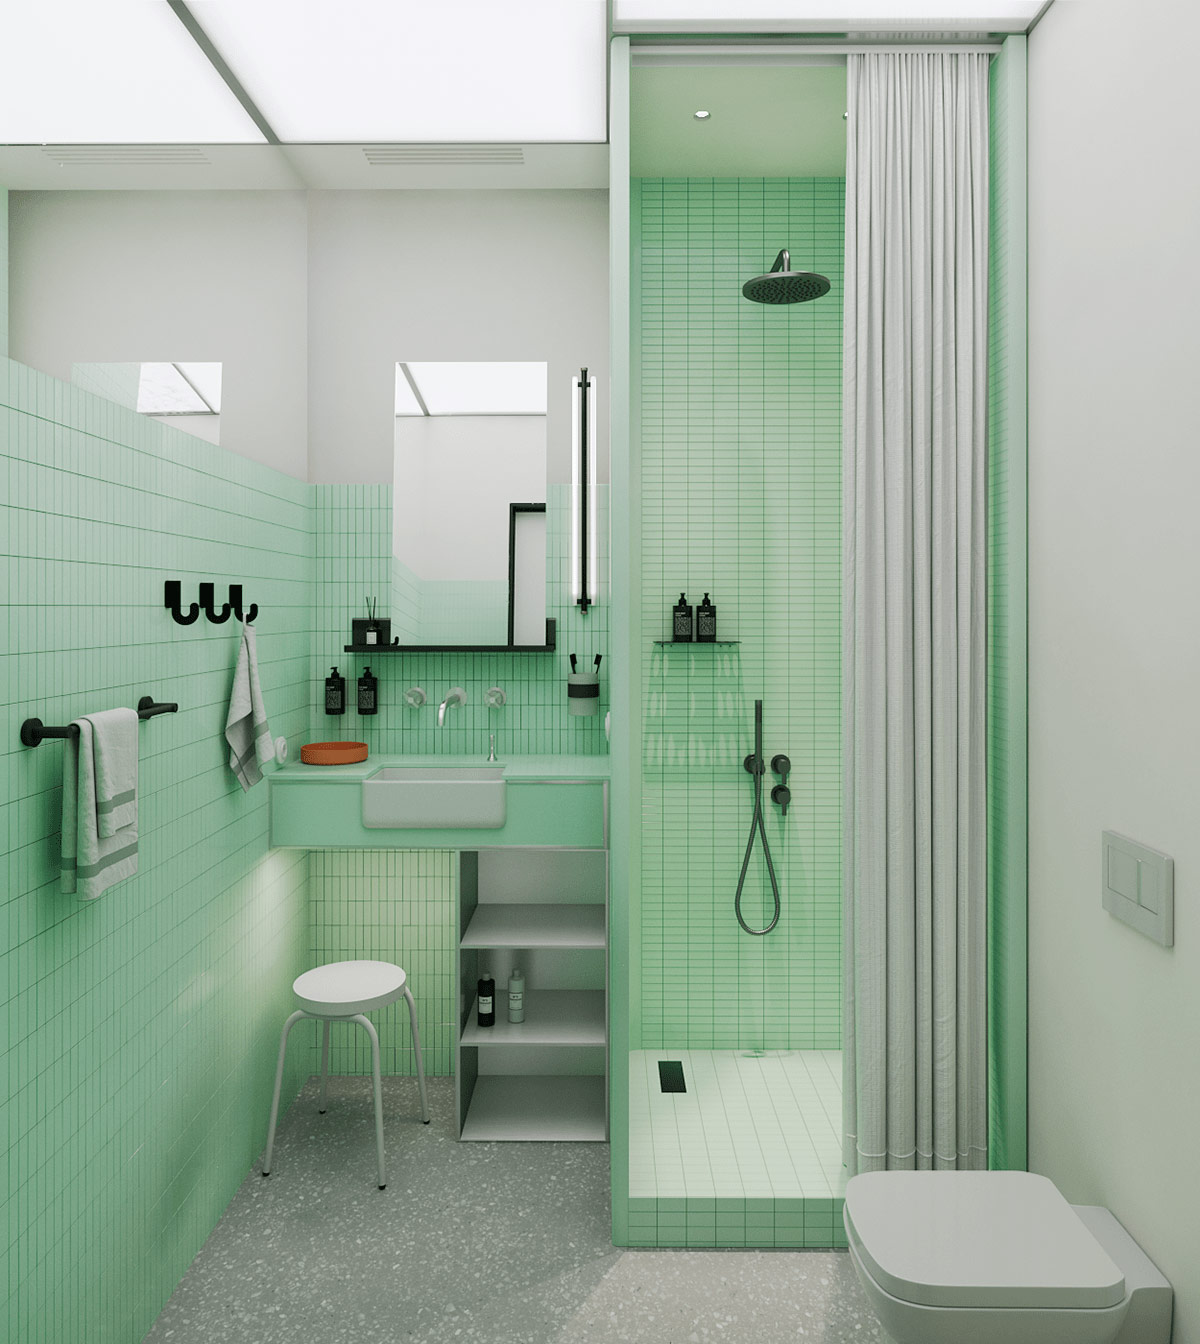 Buồng tắm đứng phân vùng với toilet bằng rèm che màu xám nhạt để tạo sự riêng tư.